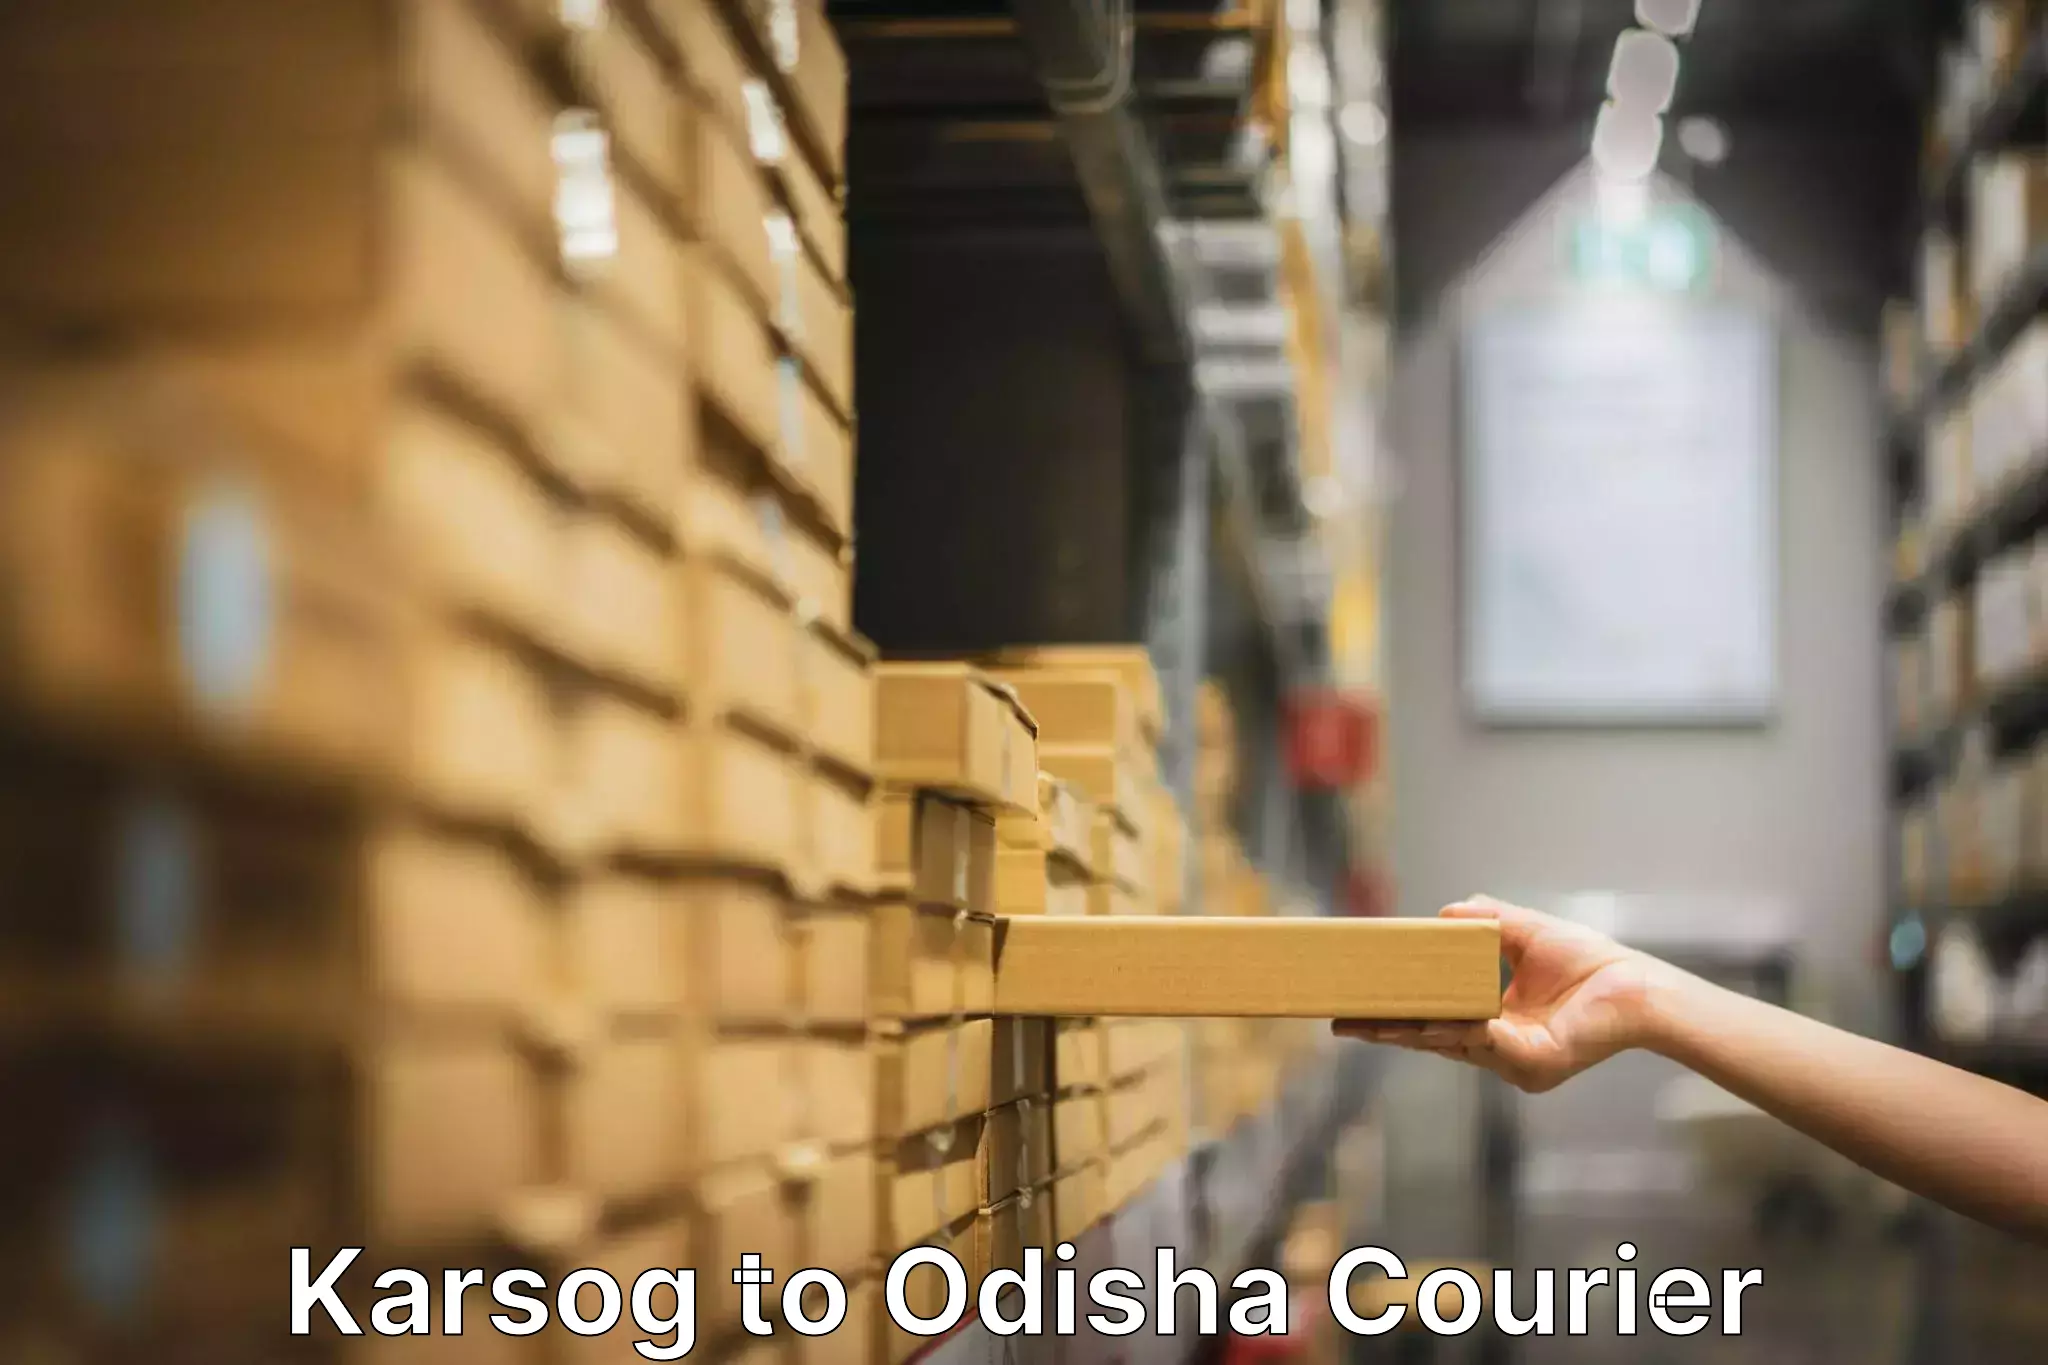 Furniture moving experts Karsog to Khordha